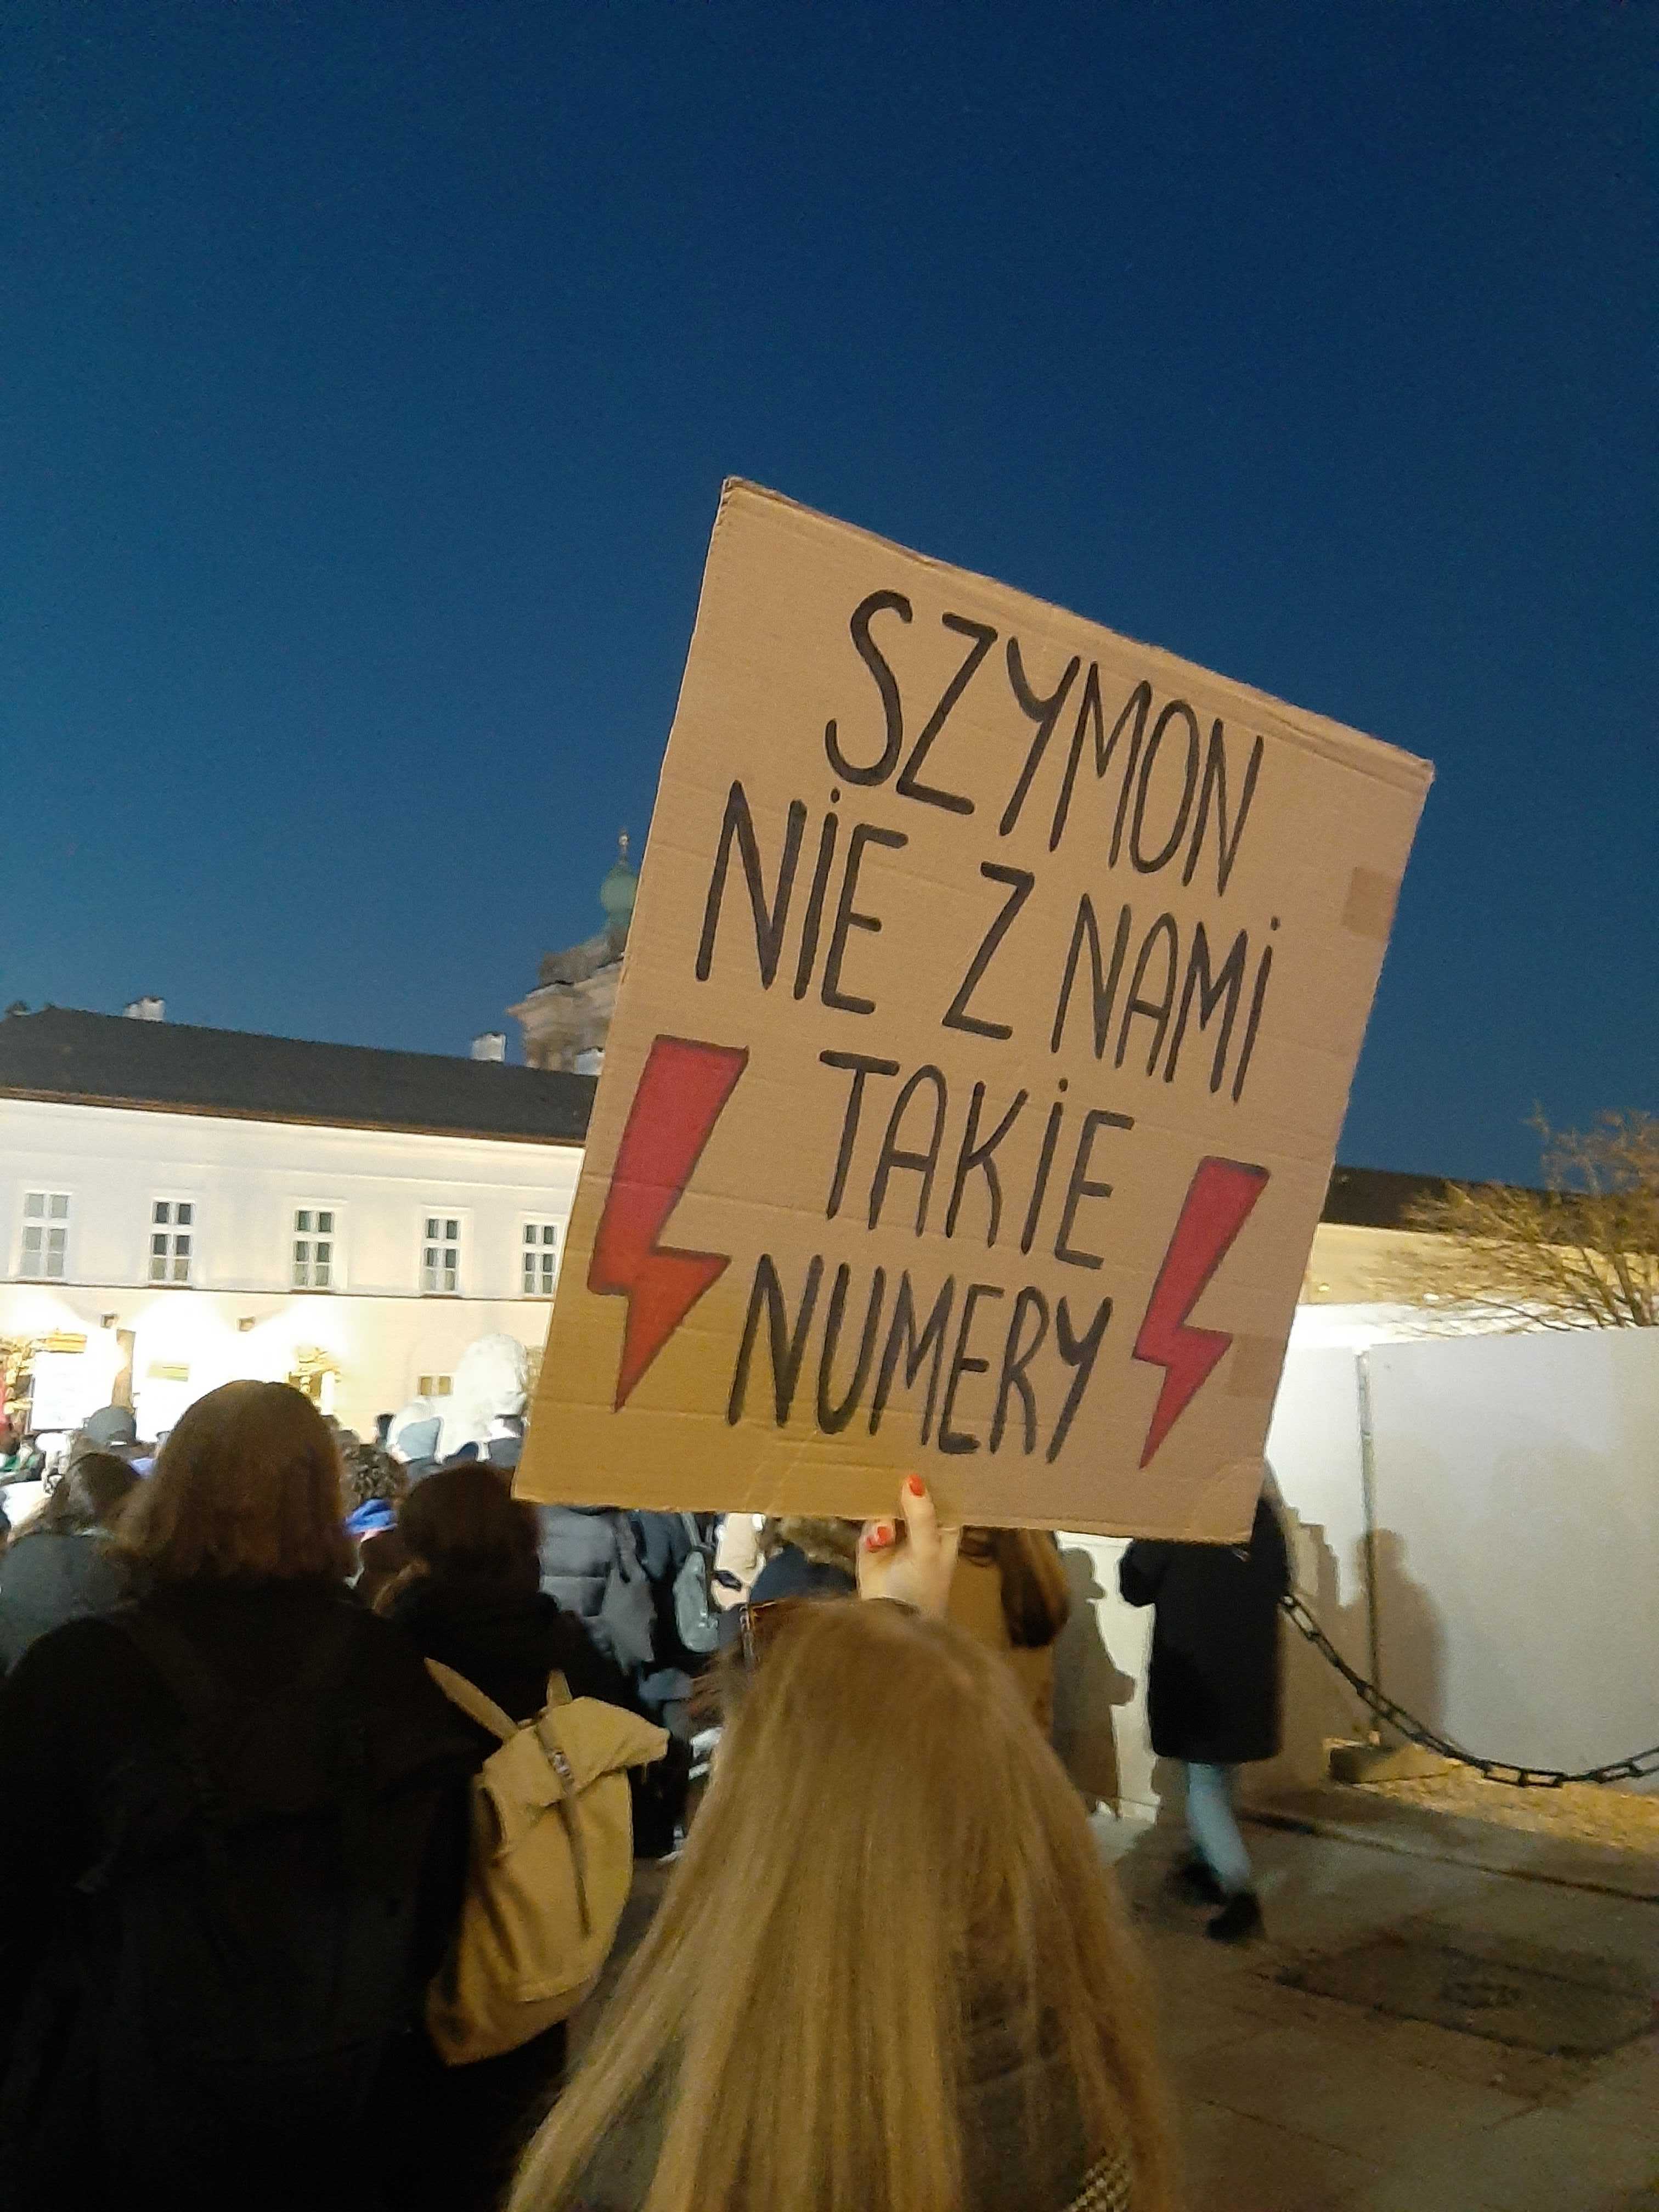 Transparent z napisem "Szymon, nie takie z nami numery"